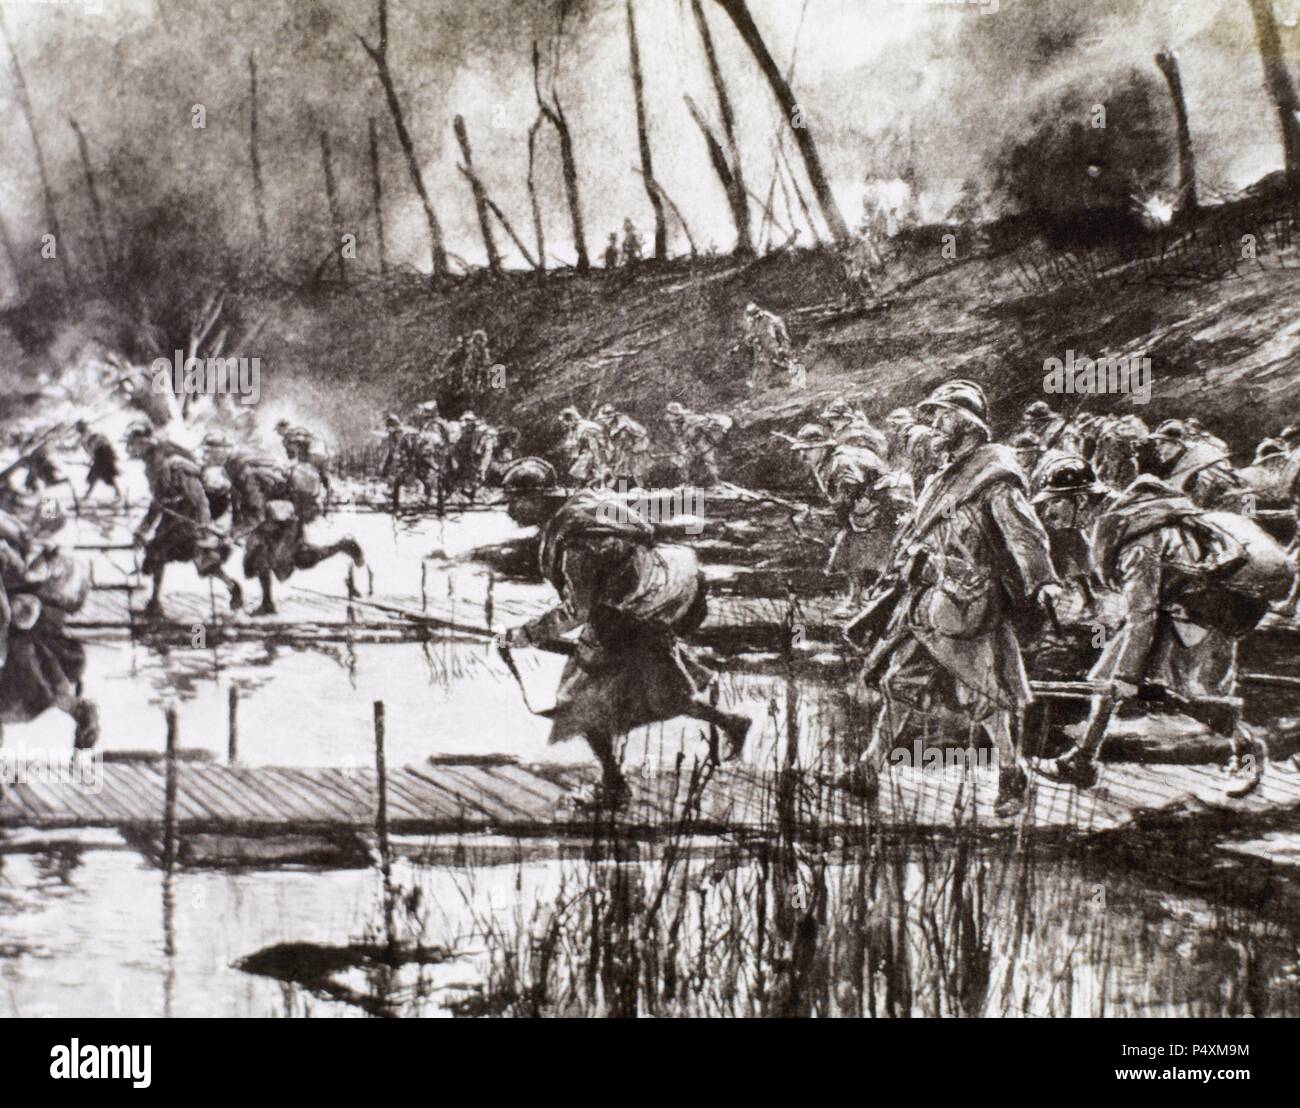 ERSTER WELTKRIEG (1914-1918). Französische Armee überquert den Fluss Isere auf improvisierten Gateways unter feindlichem Feuer (August 1917 in Frankreich). Stockfoto